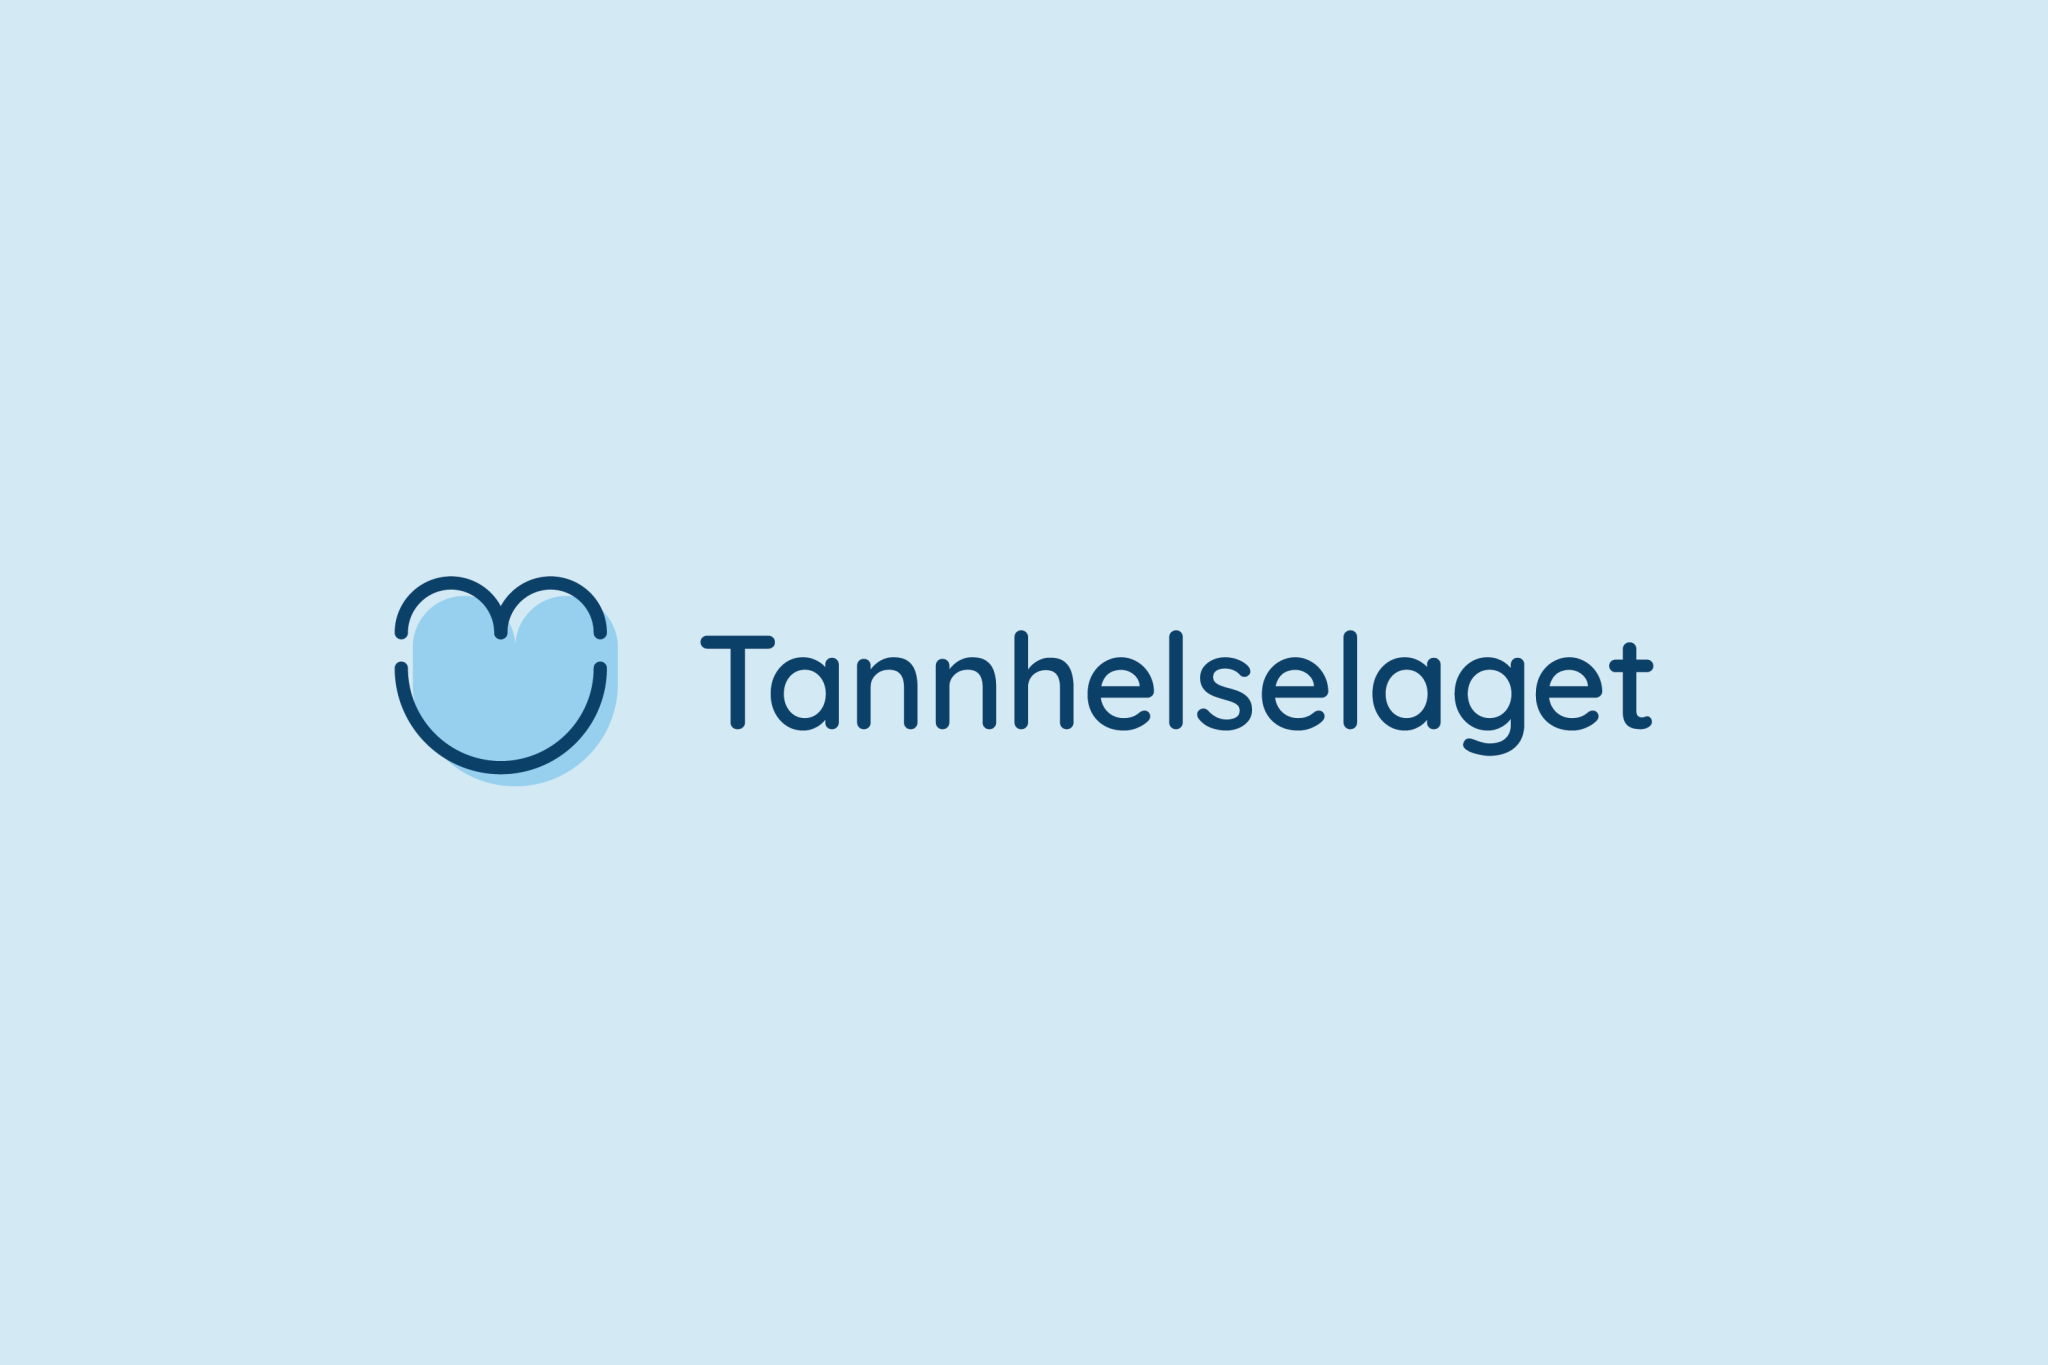 Tannhelselaget logo på lys blå bakgrunn